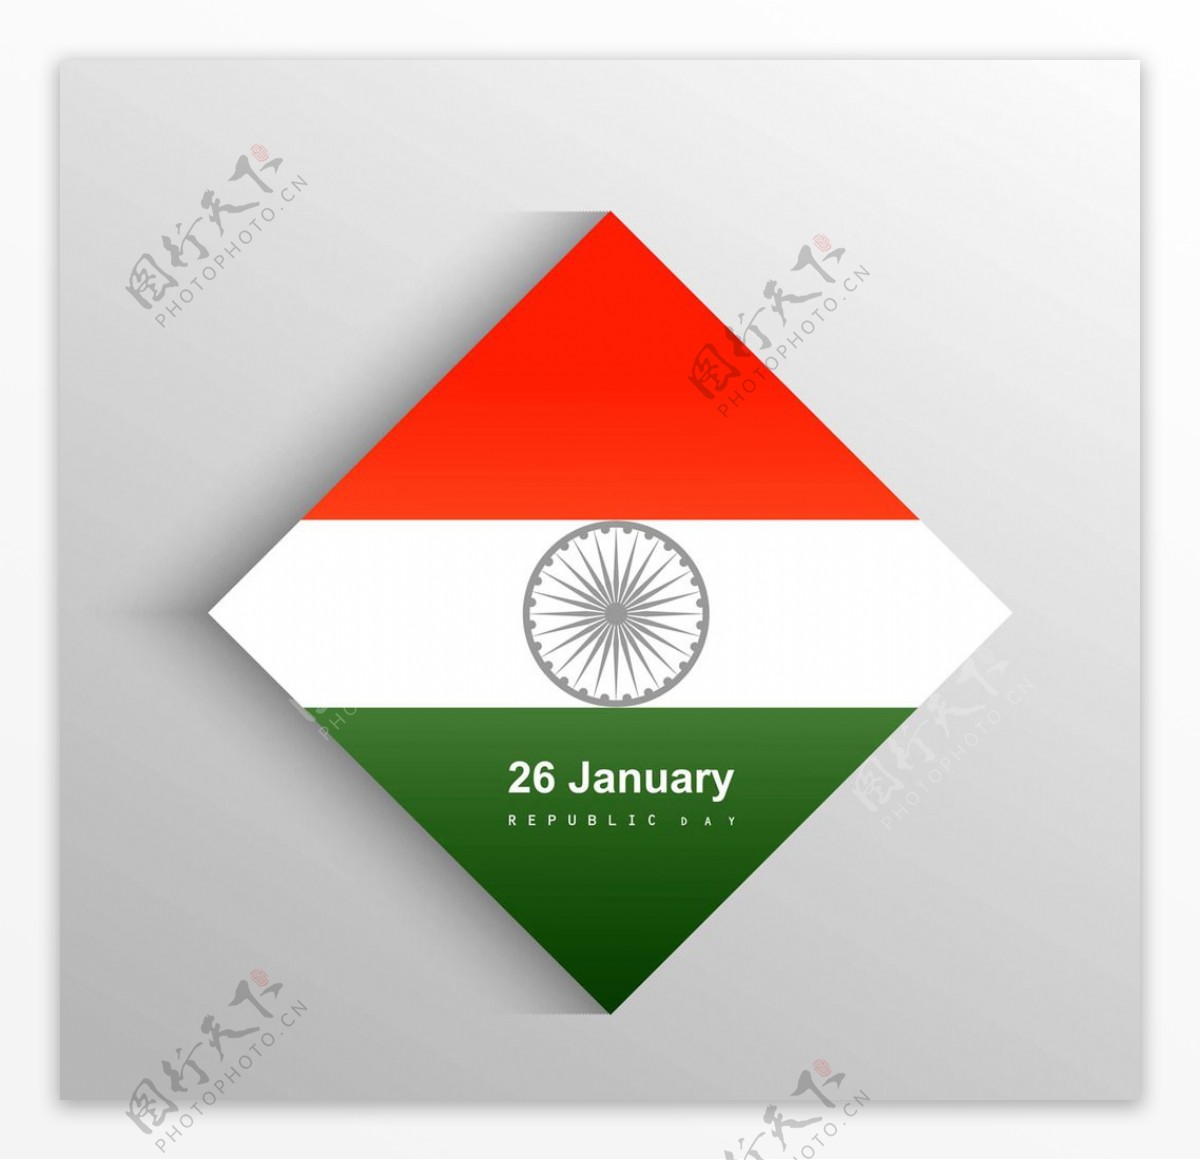 方形印度国旗